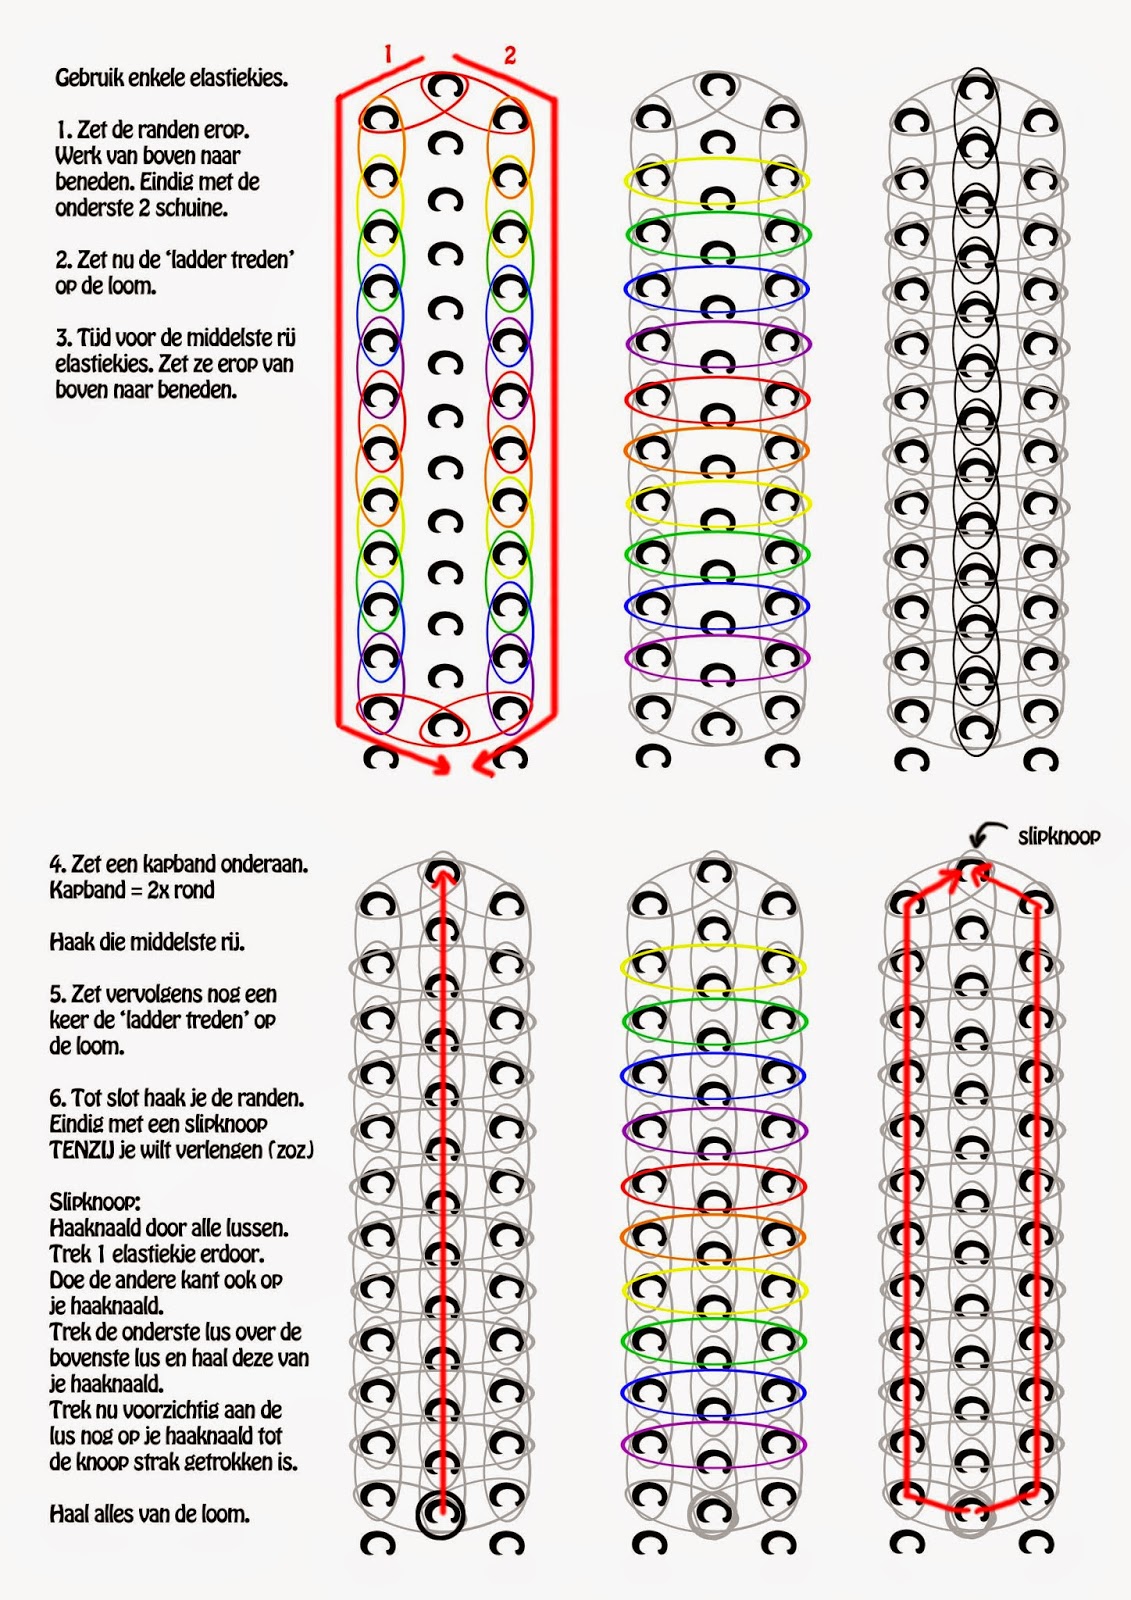 Rainbow Loom Patterns Printable